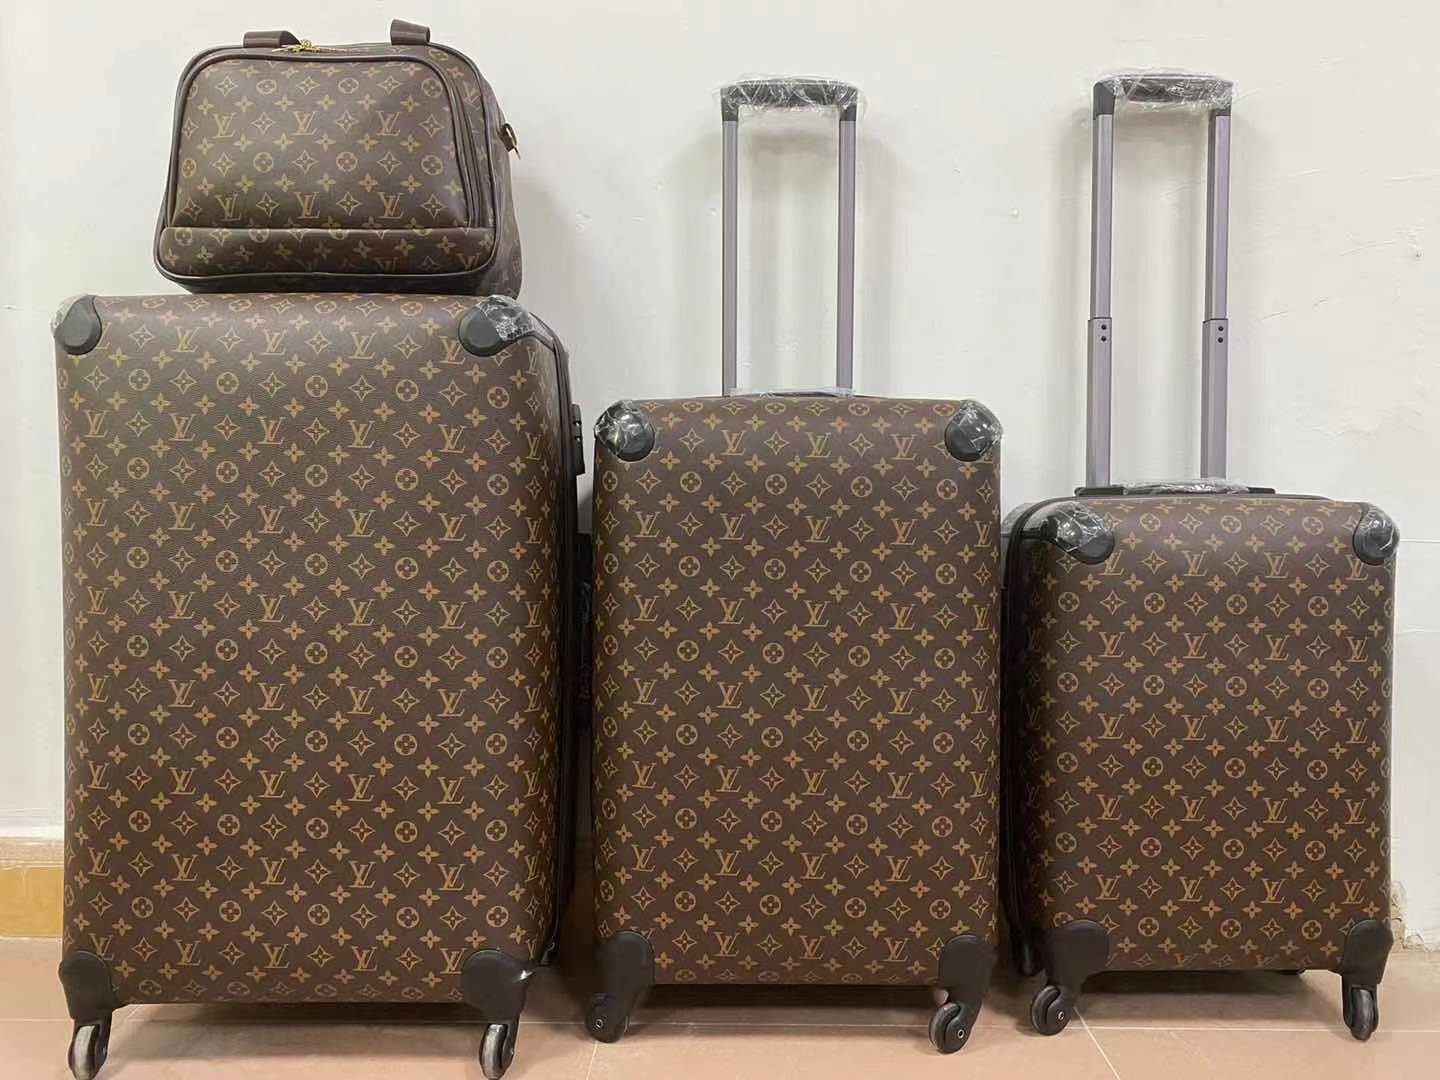 lv luggage fake